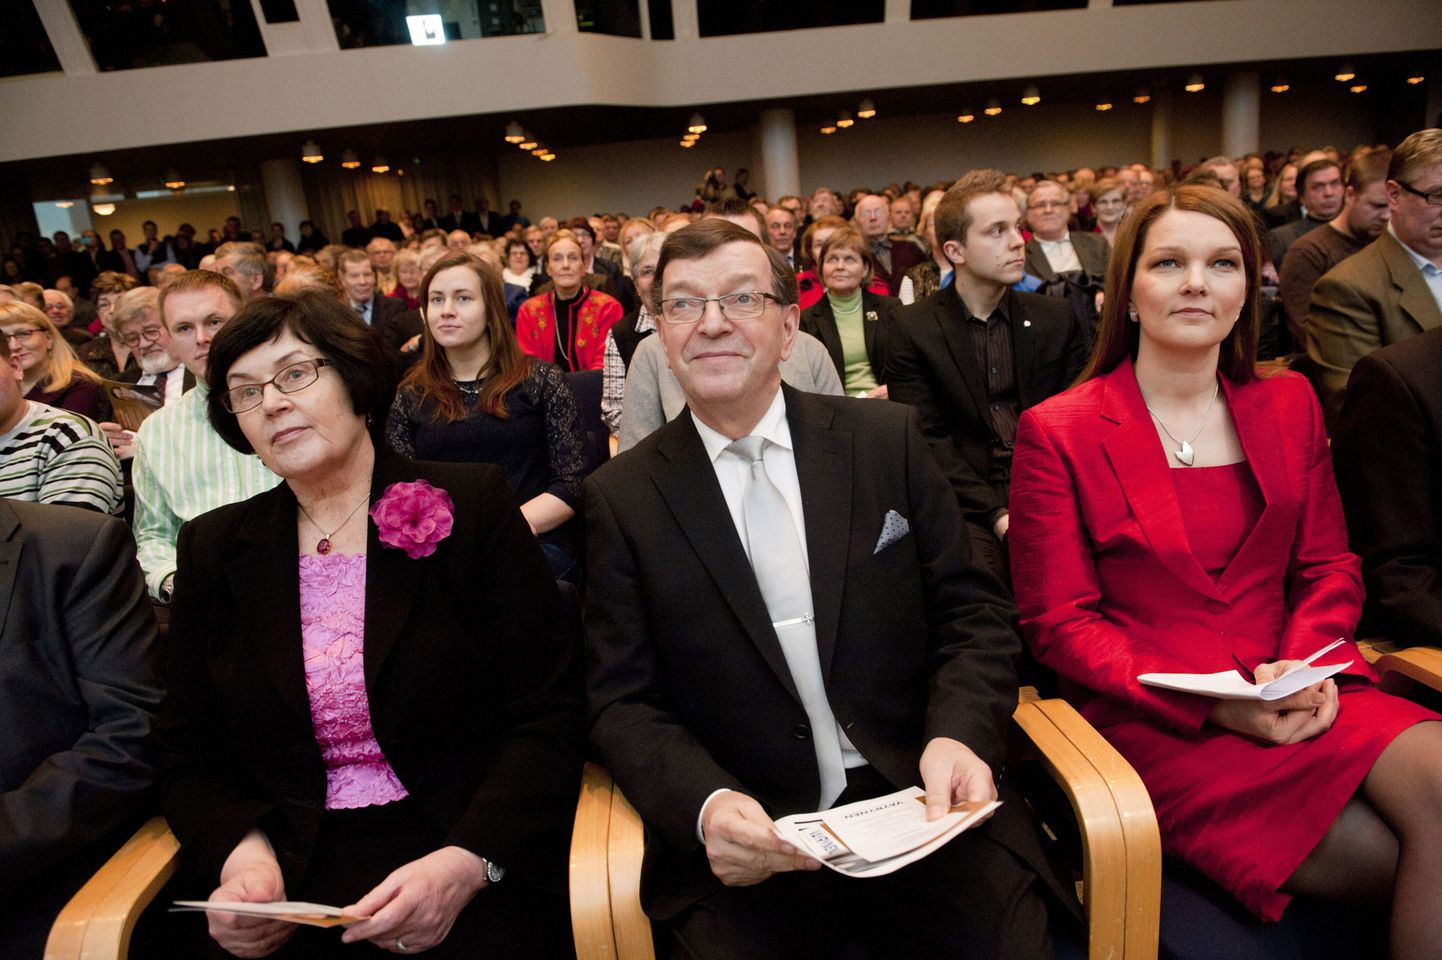 Keskerakonna senine esimees Mari Kiviniemi (paremal) koos Paavo Väyryneni ja tema abikaasa Vuokkoga.